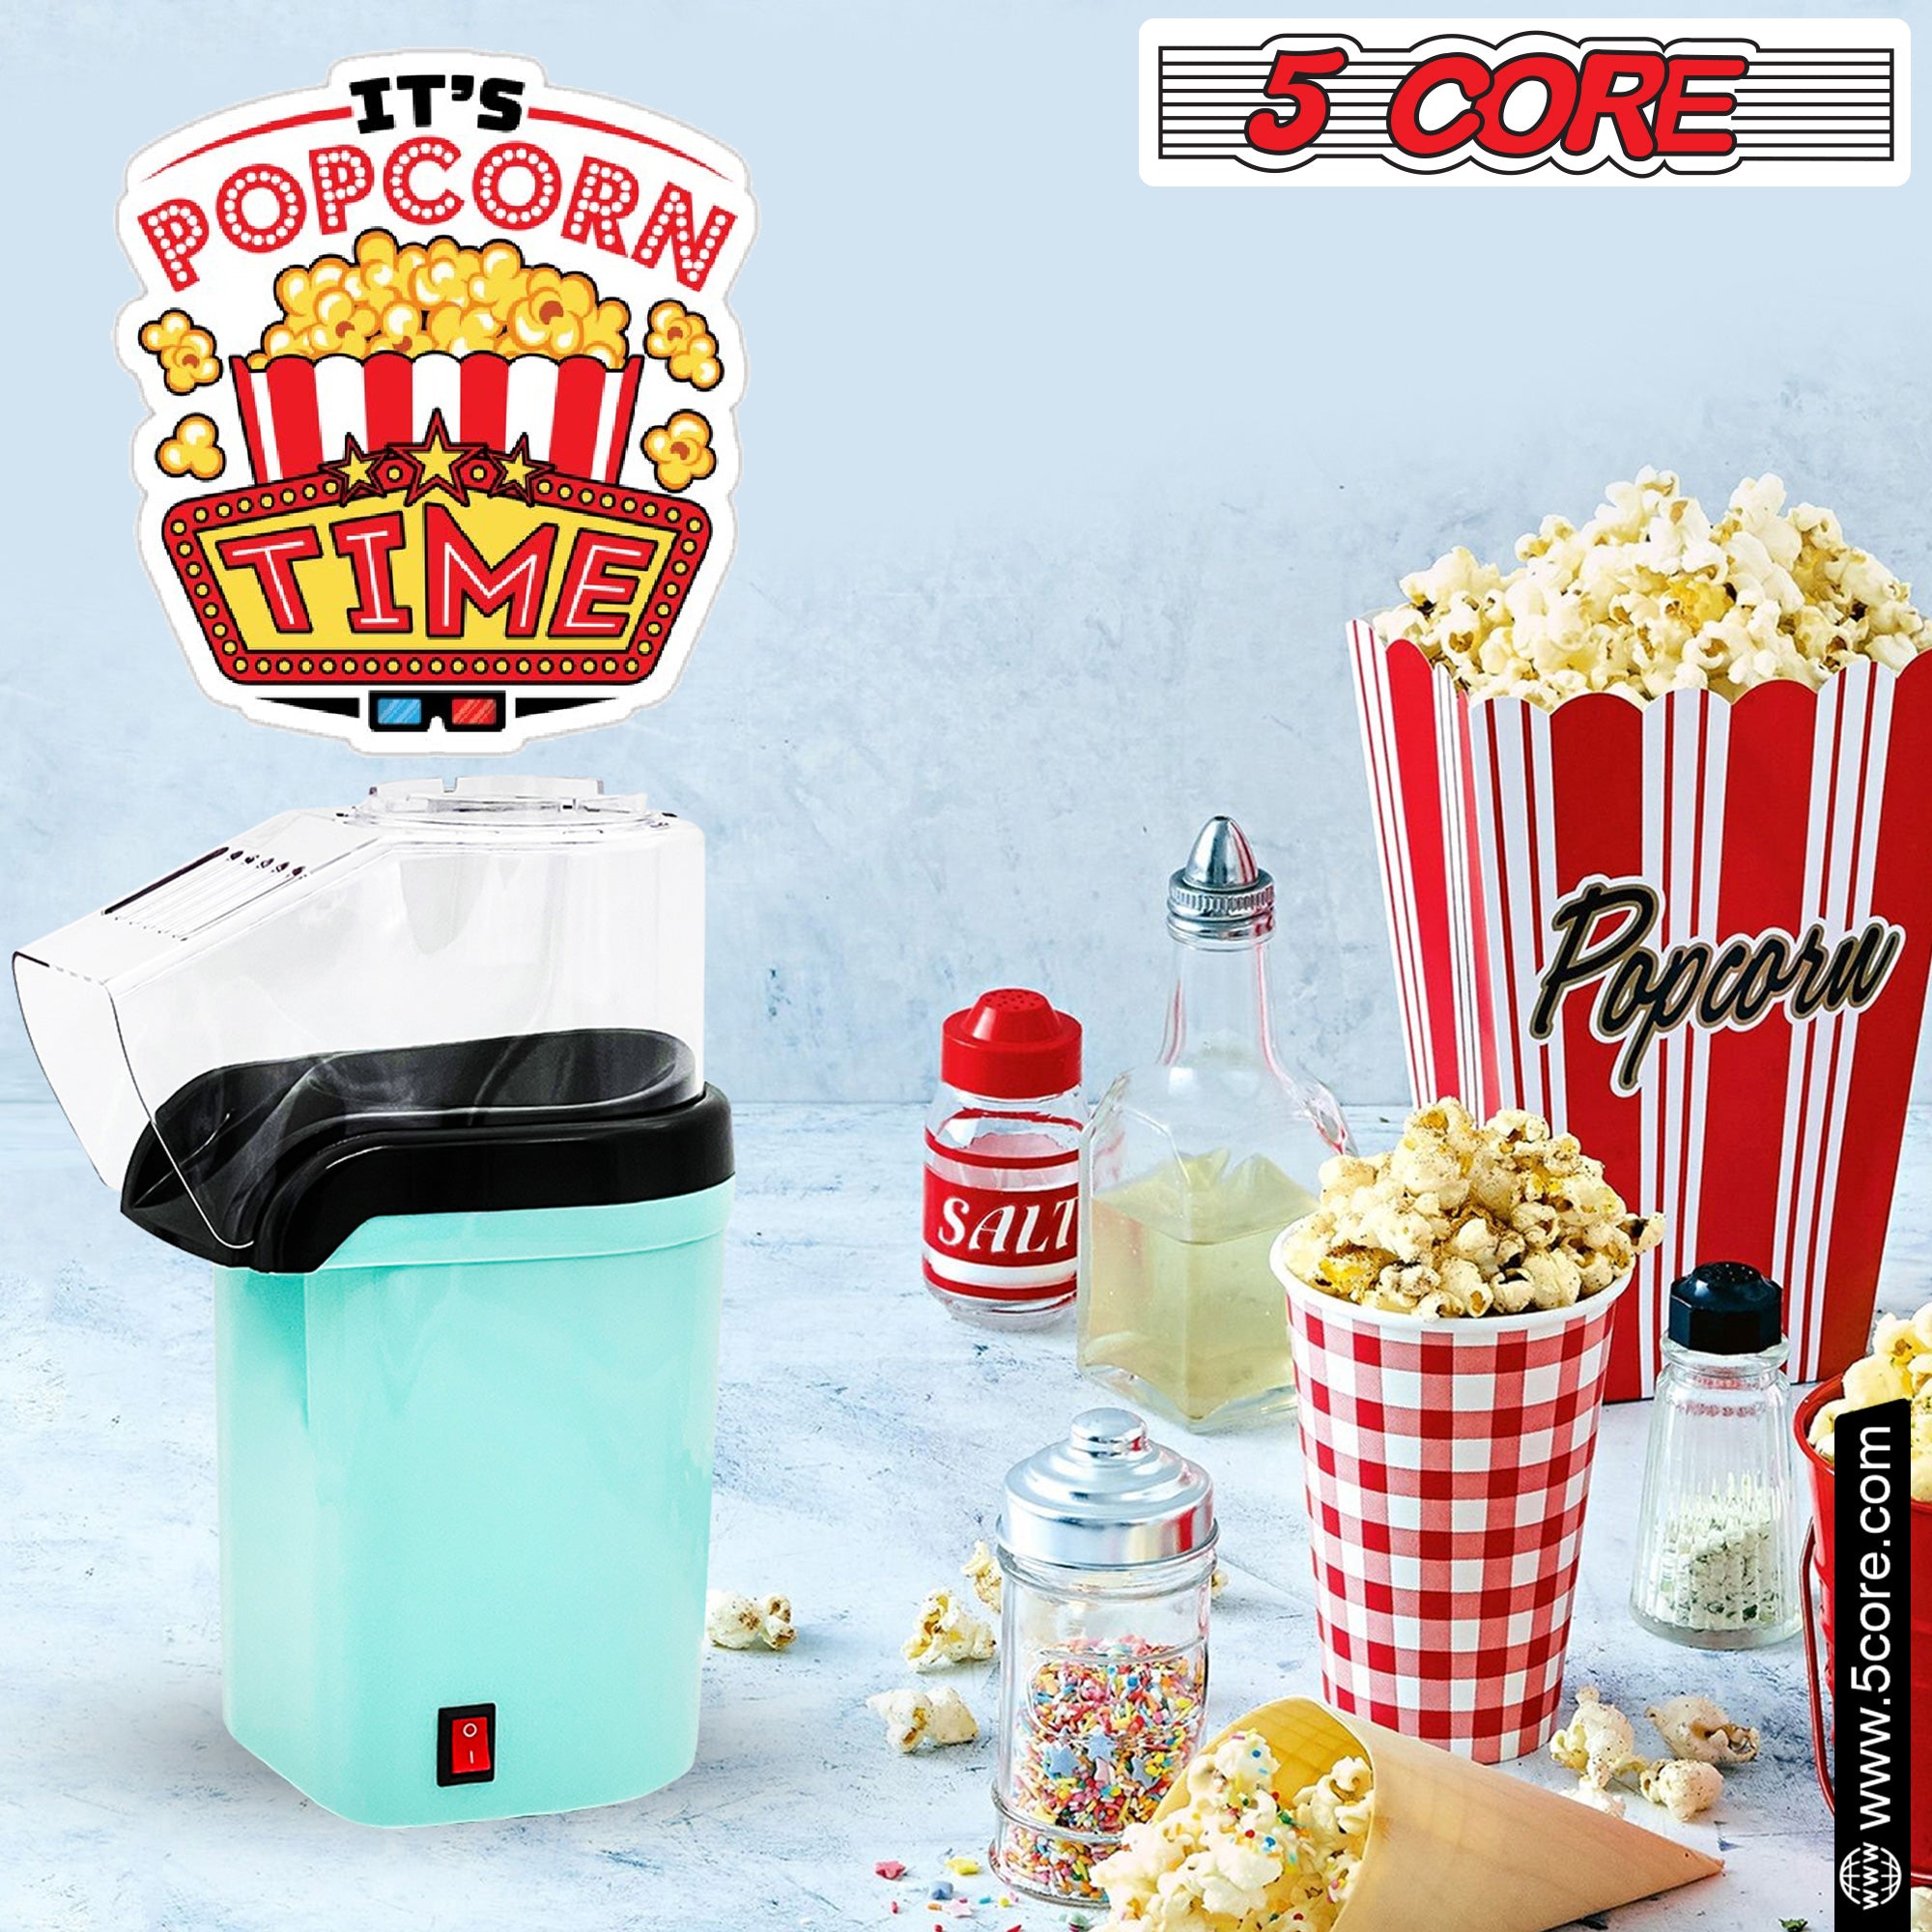 5 Core Hot Air Popcorn Machine